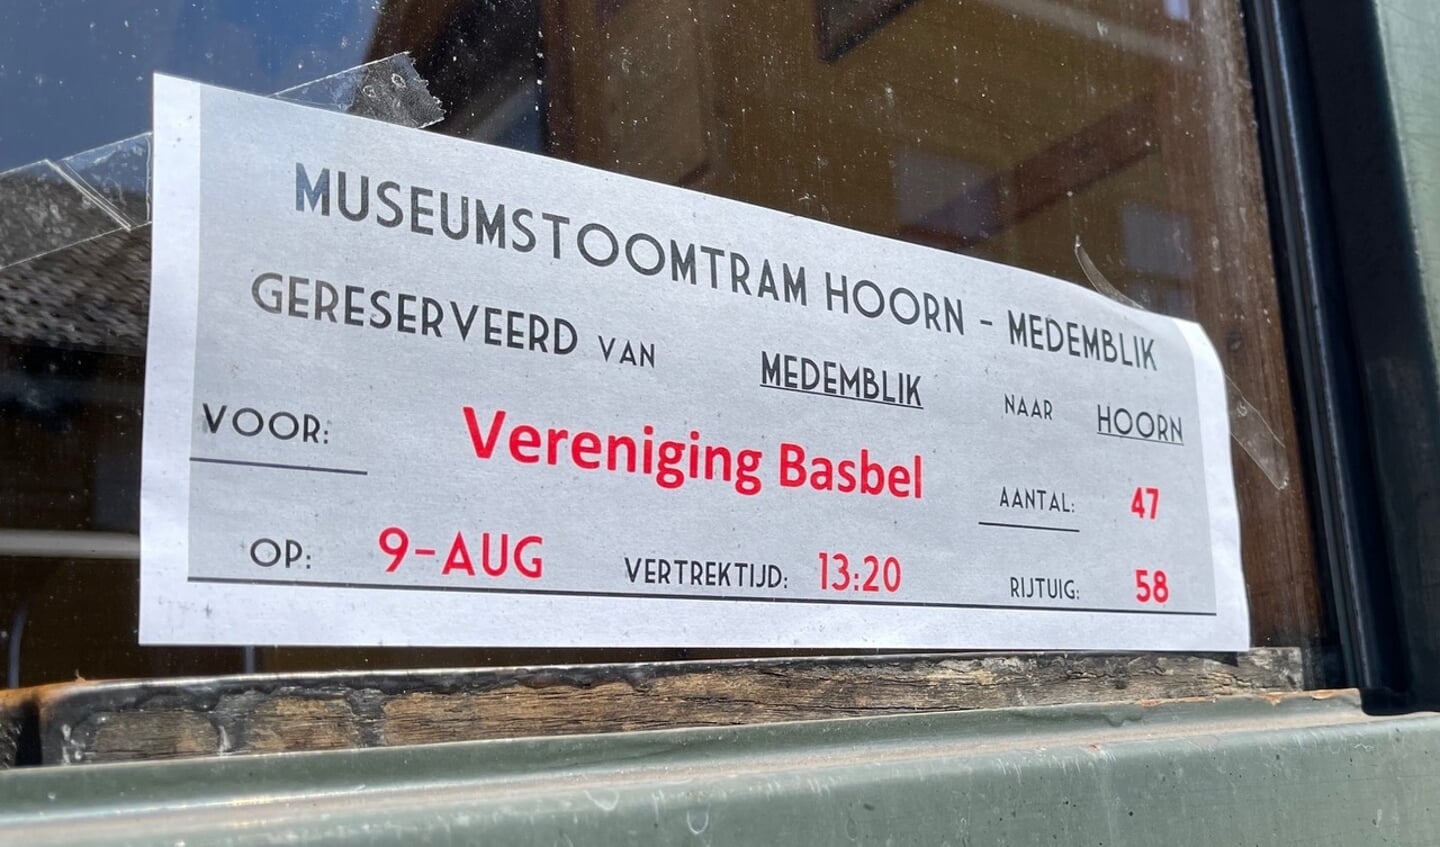 Enkele wagons in de stoomtrein naar Hoorn speciaal gereserveerd voor BasBEL.